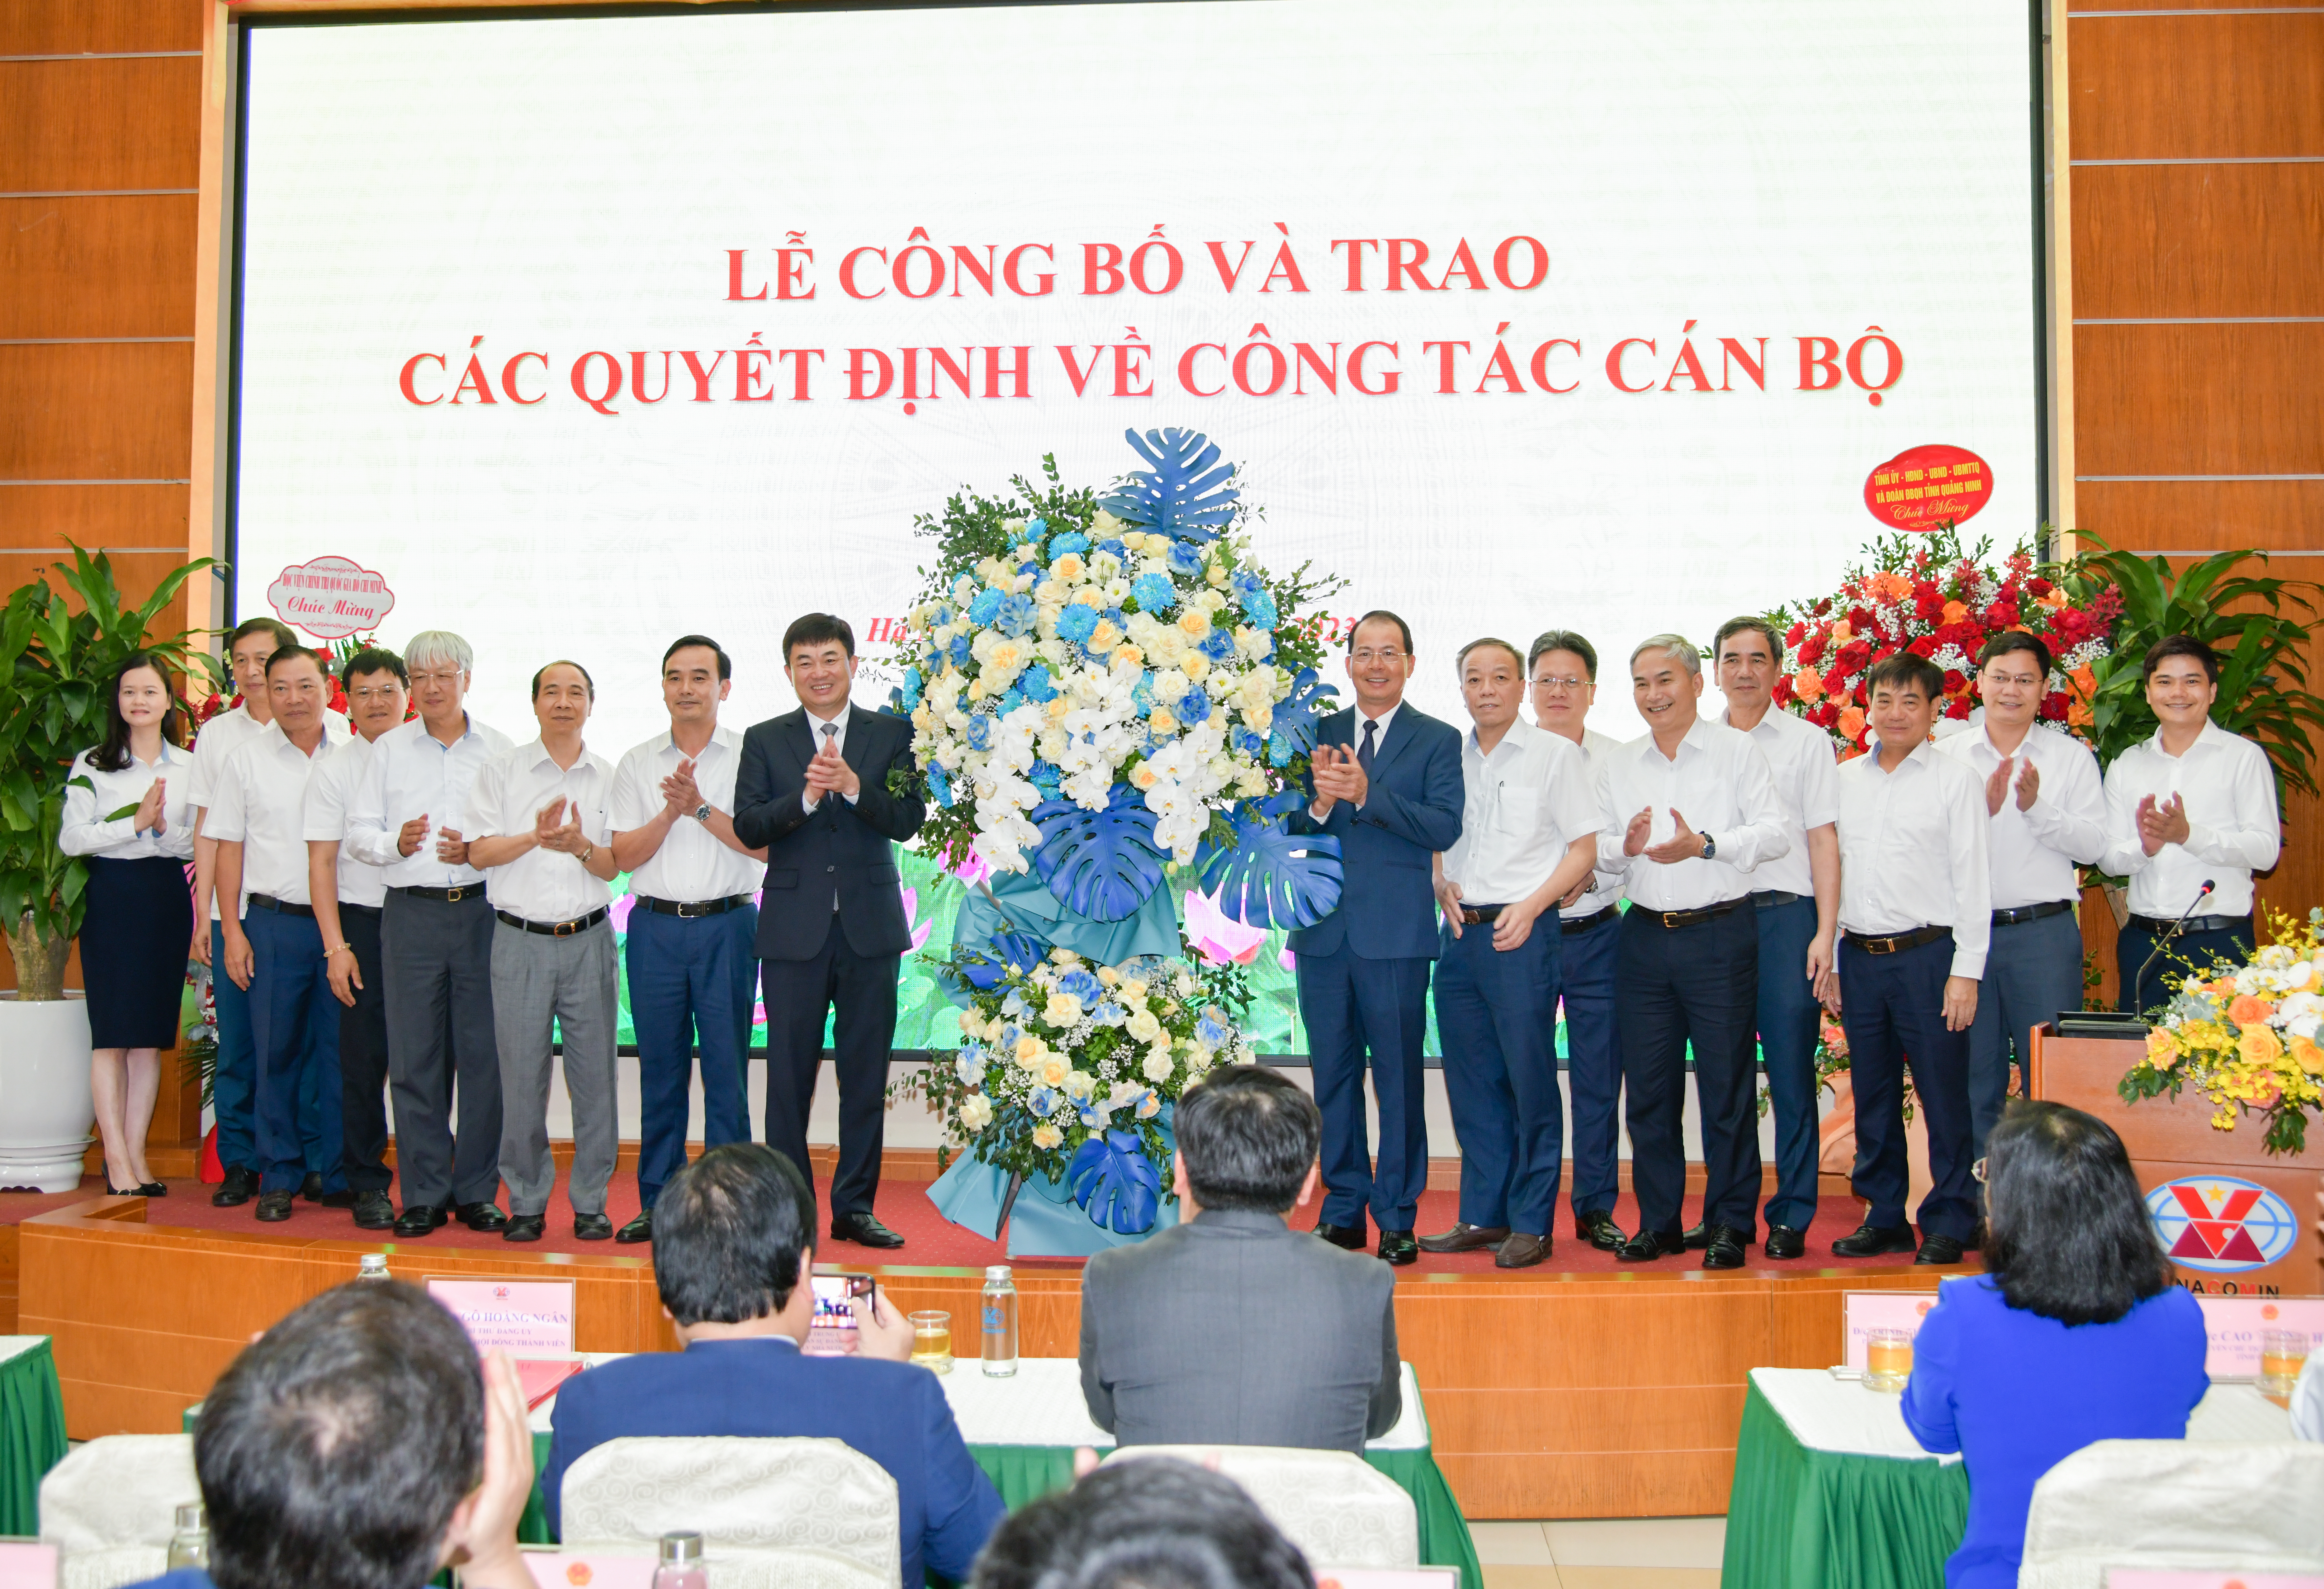 Công bố quyết định bổ nhiệm đồng chí Ngô Hoàng Ngân giữ chức vụ Chủ tịch HĐTV Tập đoàn Công nghiệp Than - Khoáng sản Việt Nam - Ảnh 7